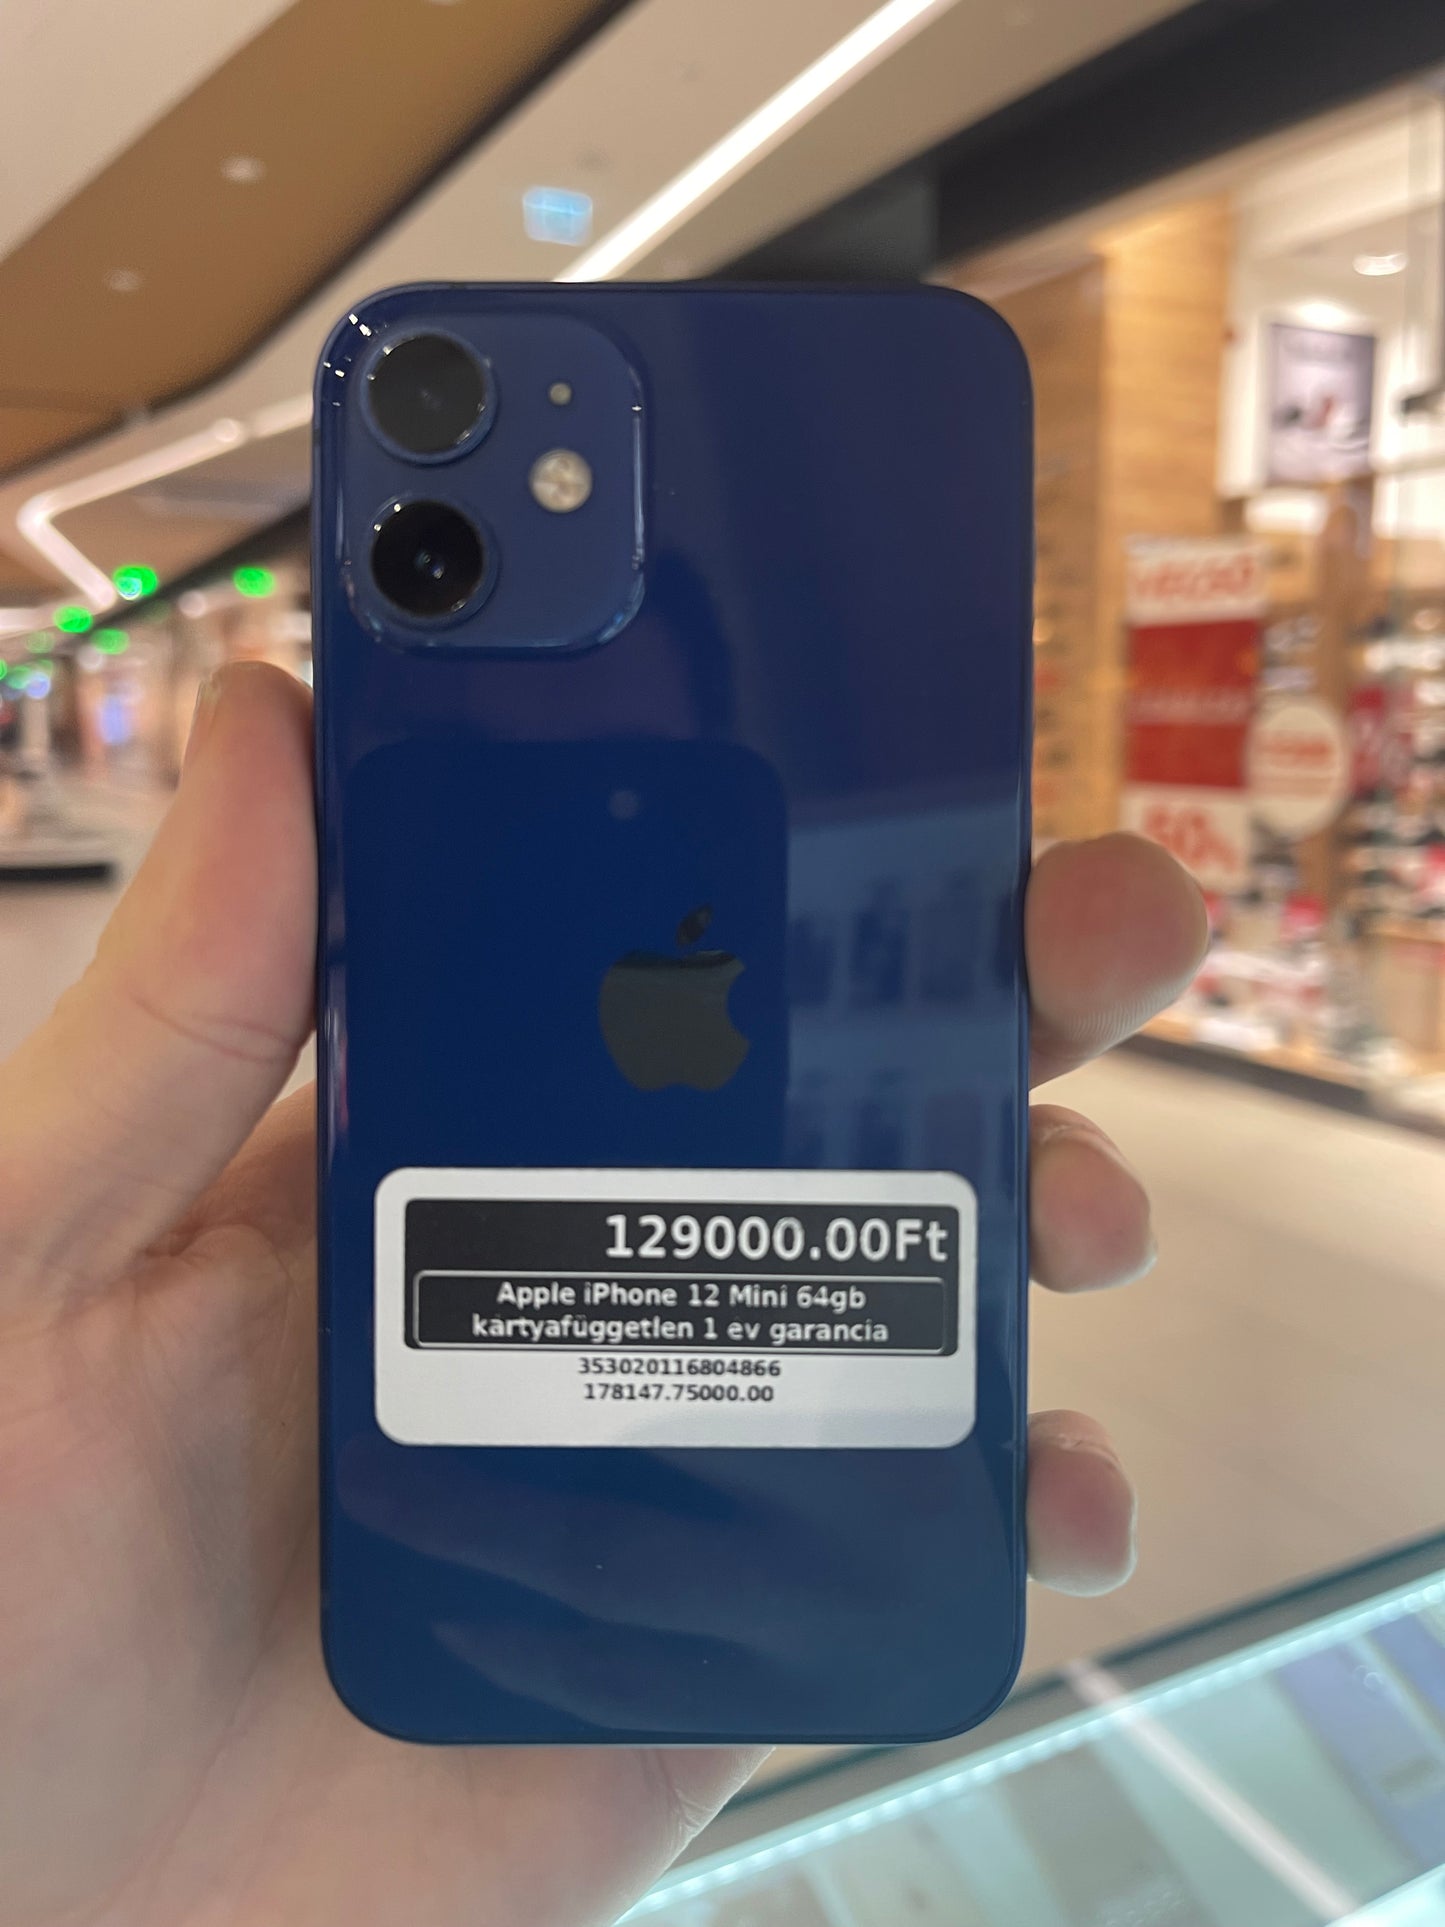 Apple iPhone 12 Mini 64gb kártyafüggetlen 1 év garancia